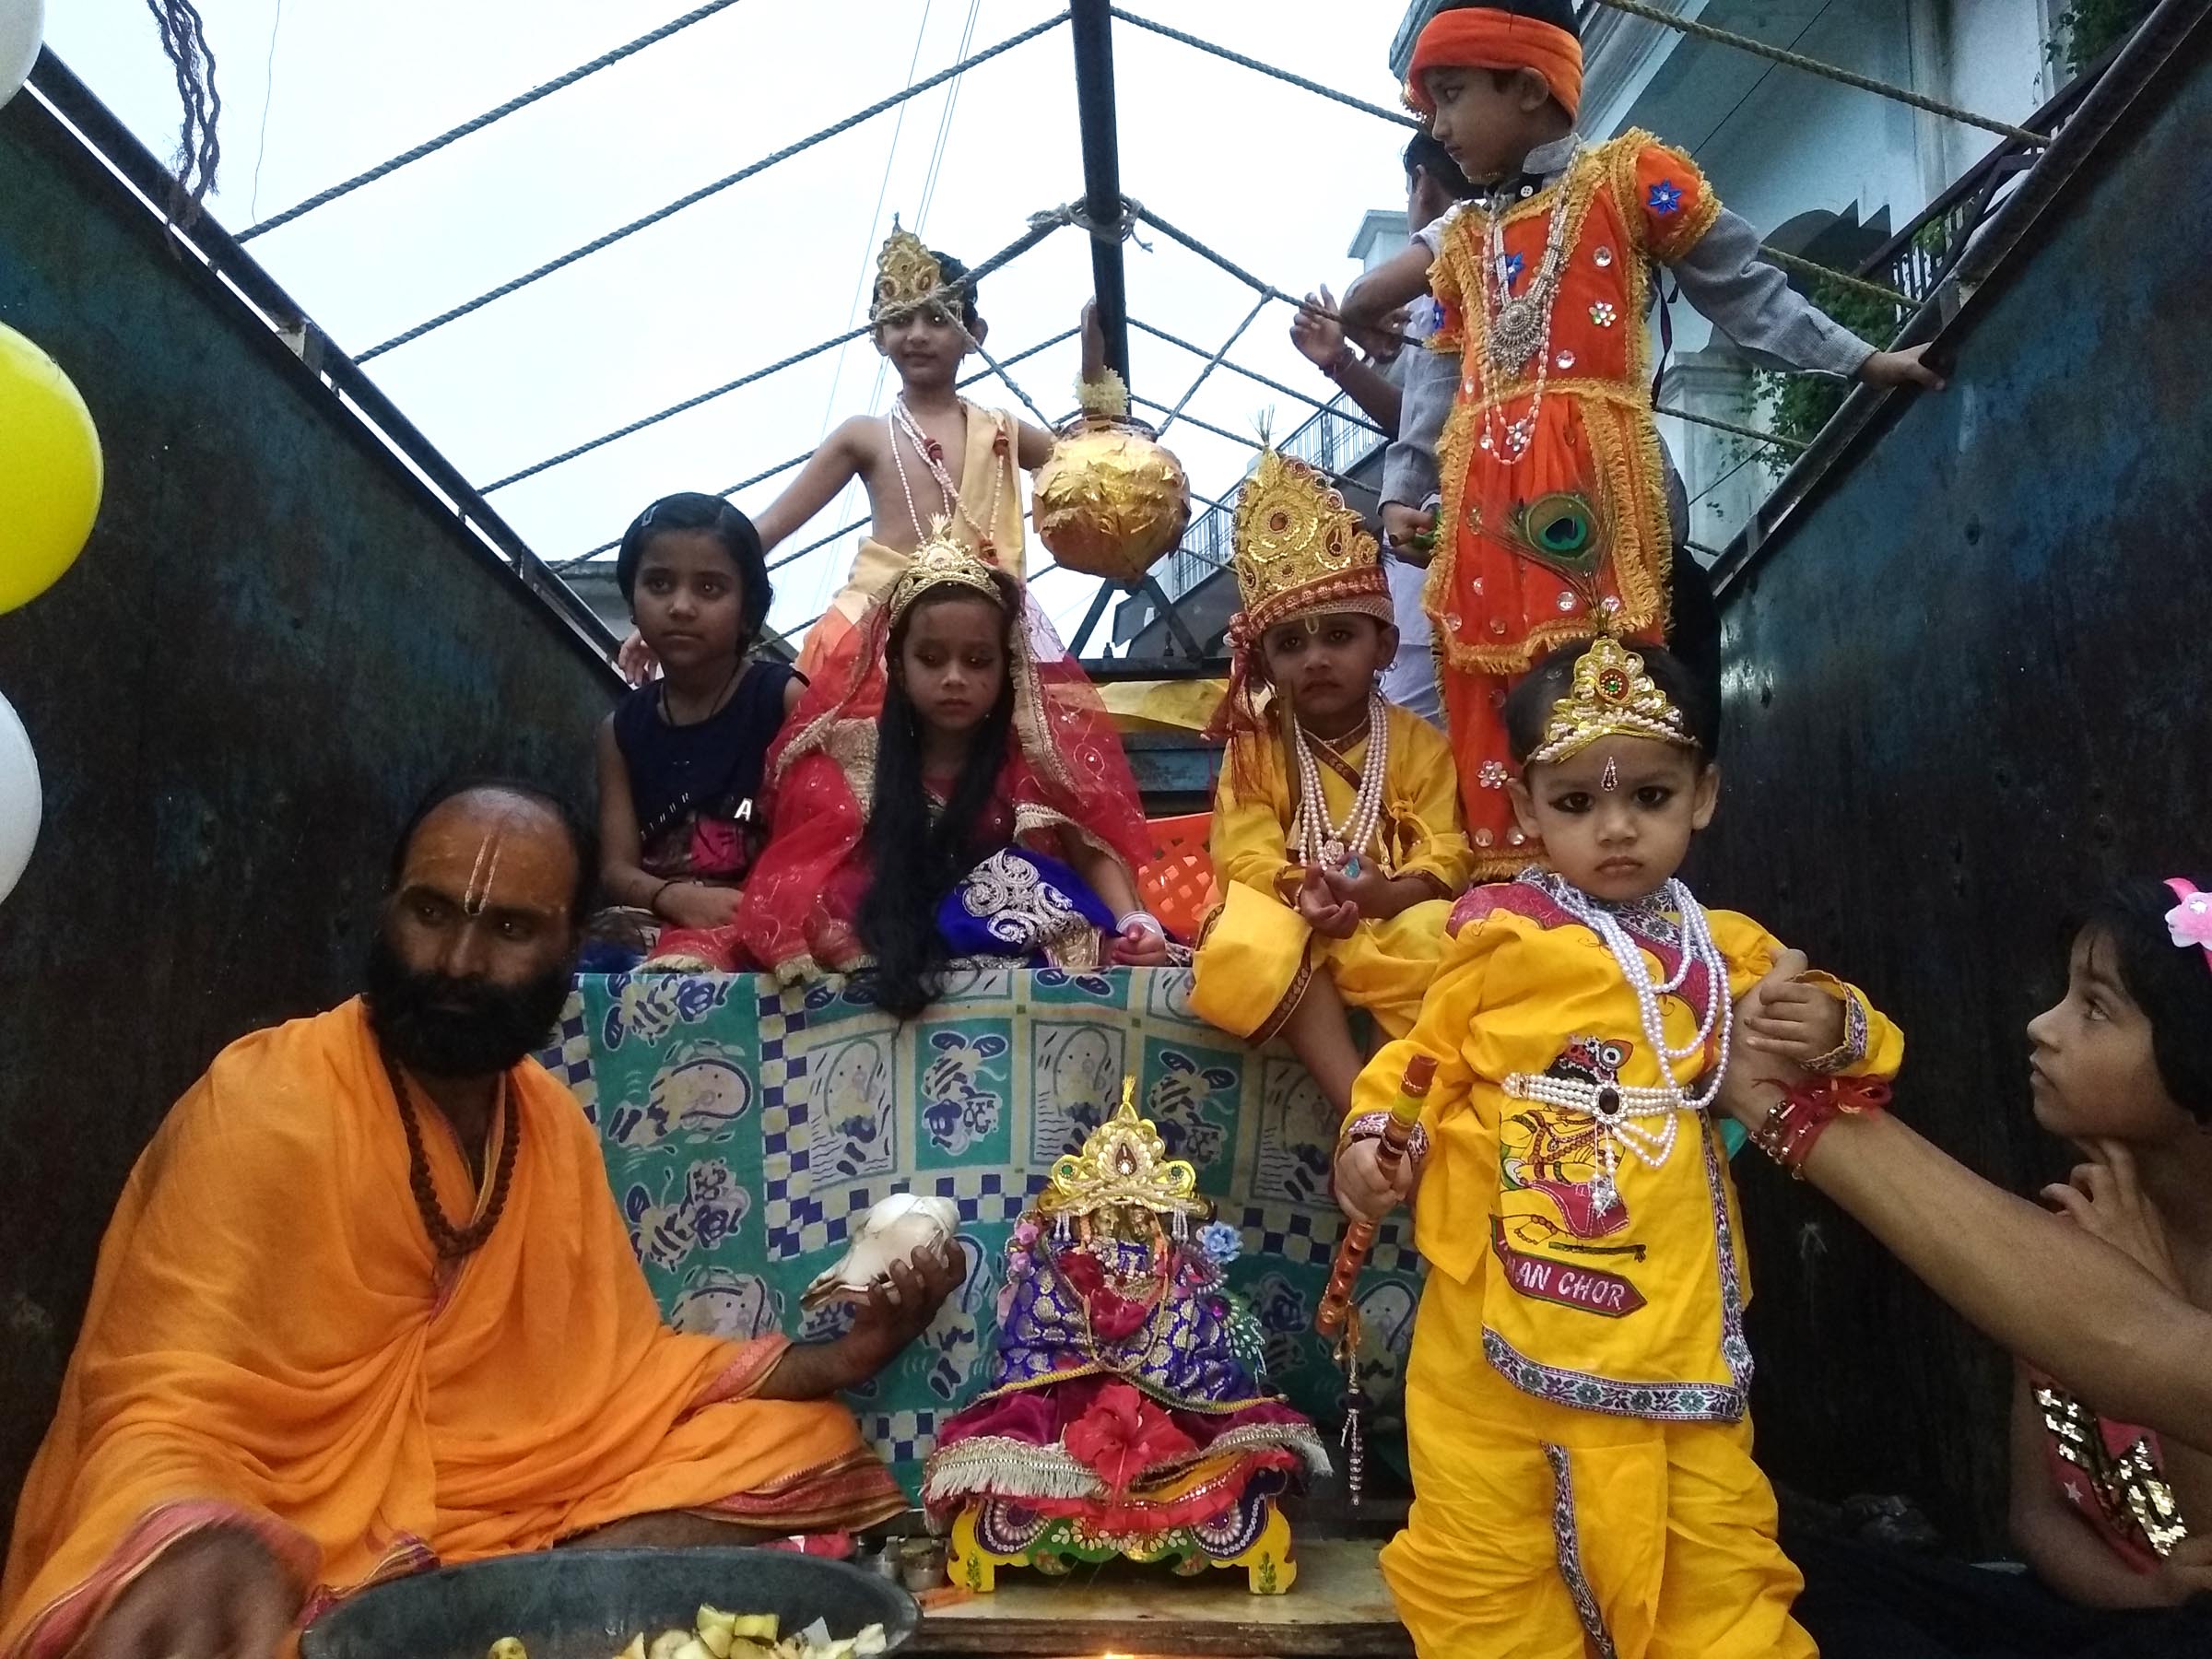 Bhajan kirtan held in temples, torn apart